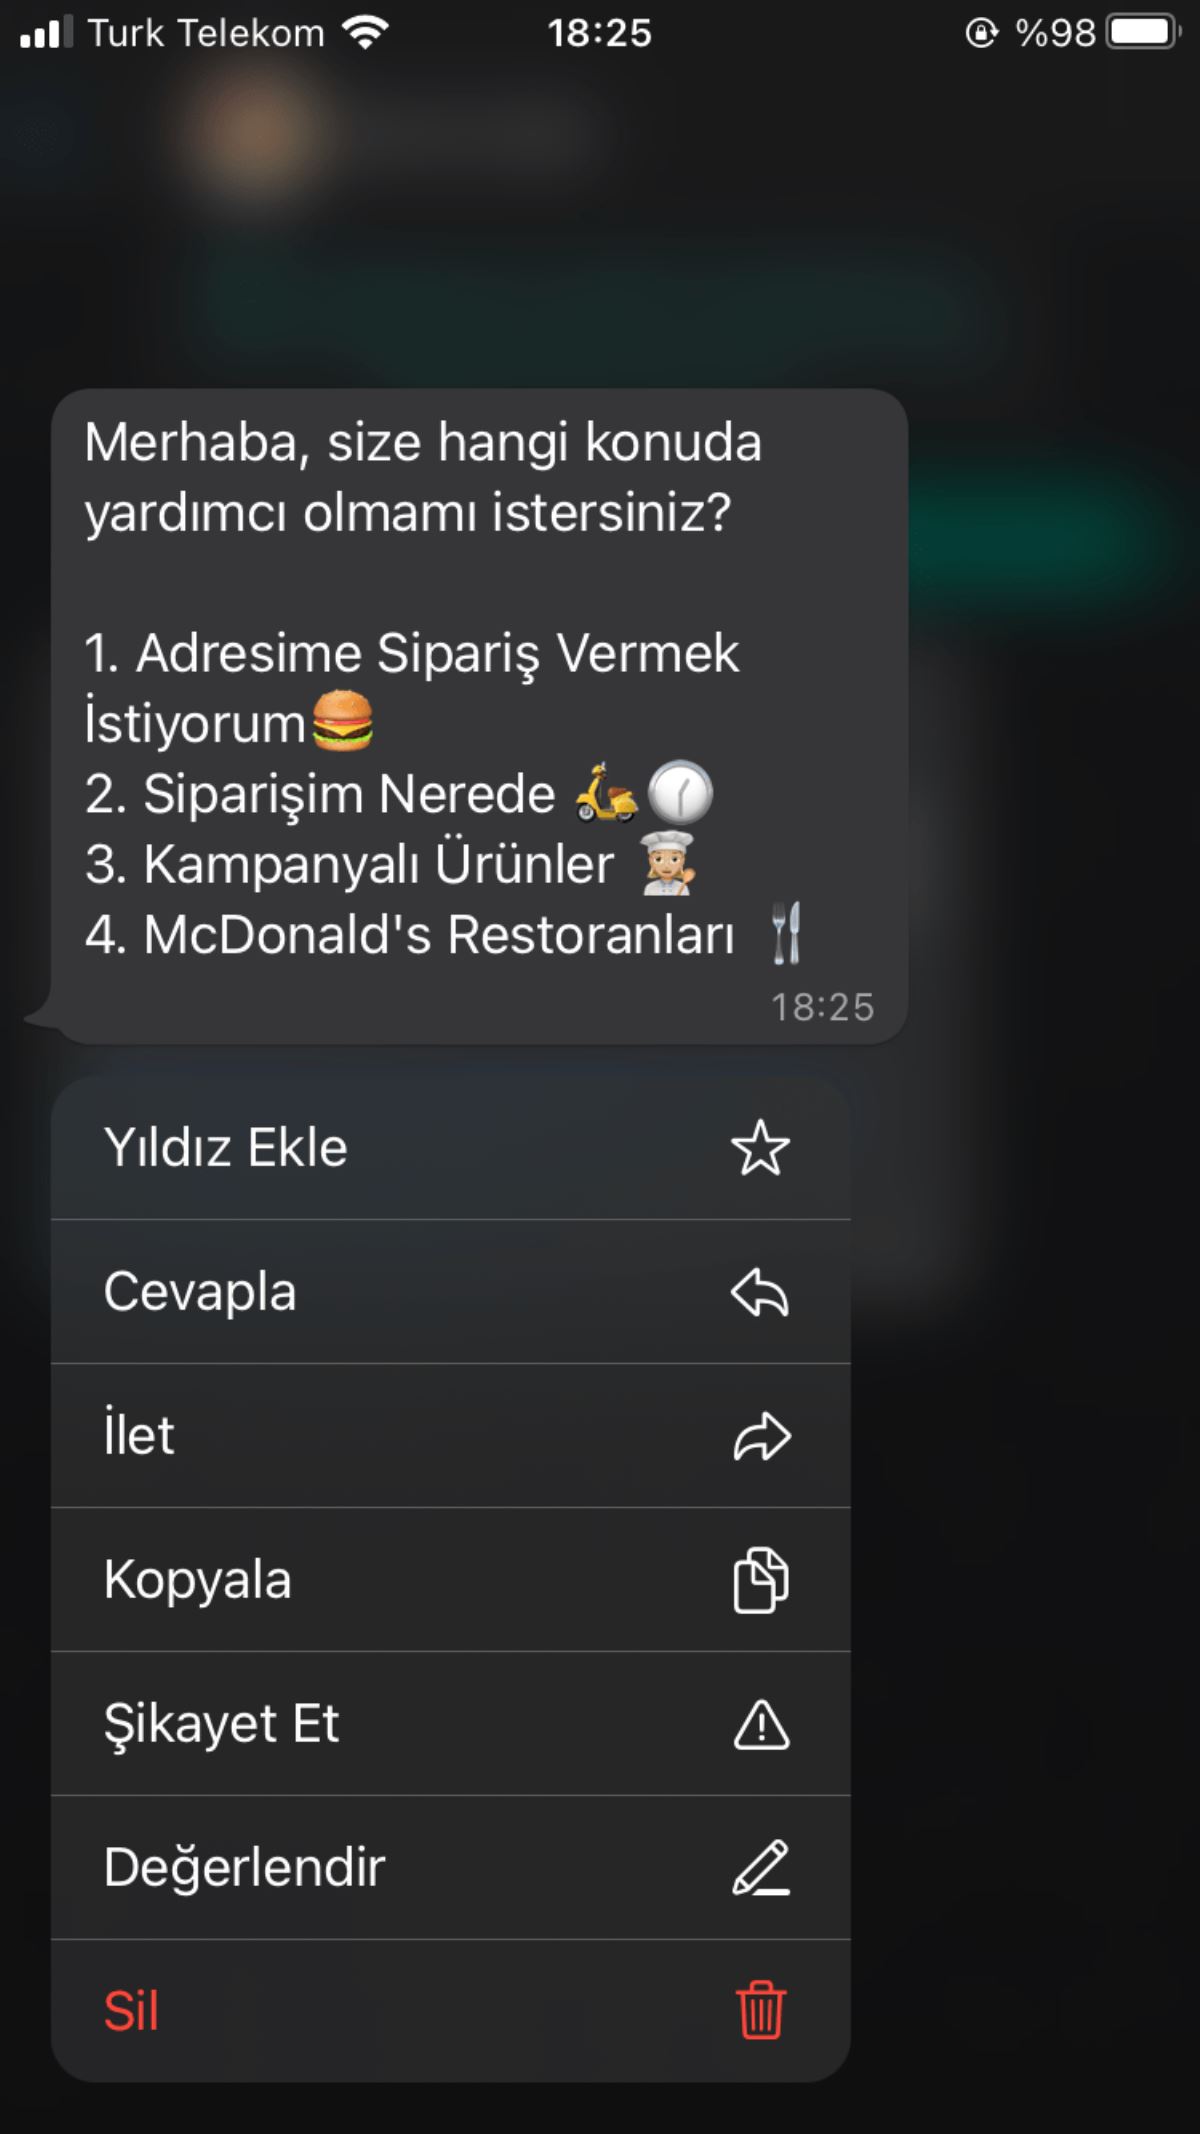 Türk mühendis geliştirdi, WhatsApp kullanıma sundu